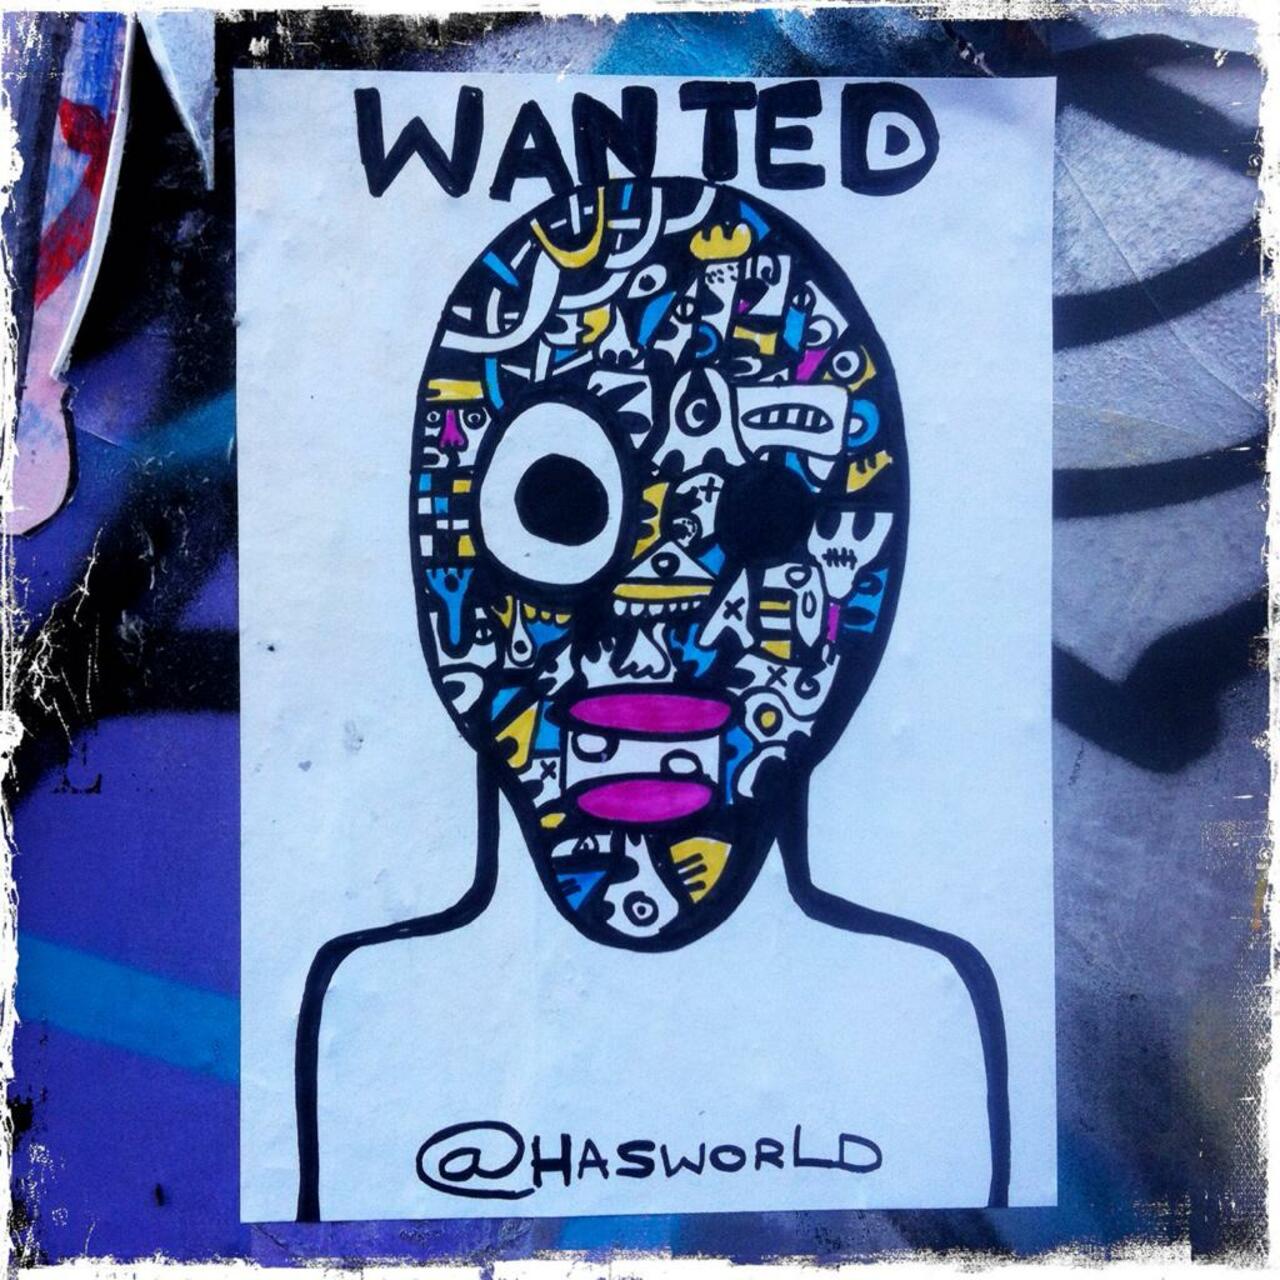 Wanted - @hasworld0 paste-up on Grimsby Street

#art #graffiti #streetart http://t.co/vGI8Av1WSs